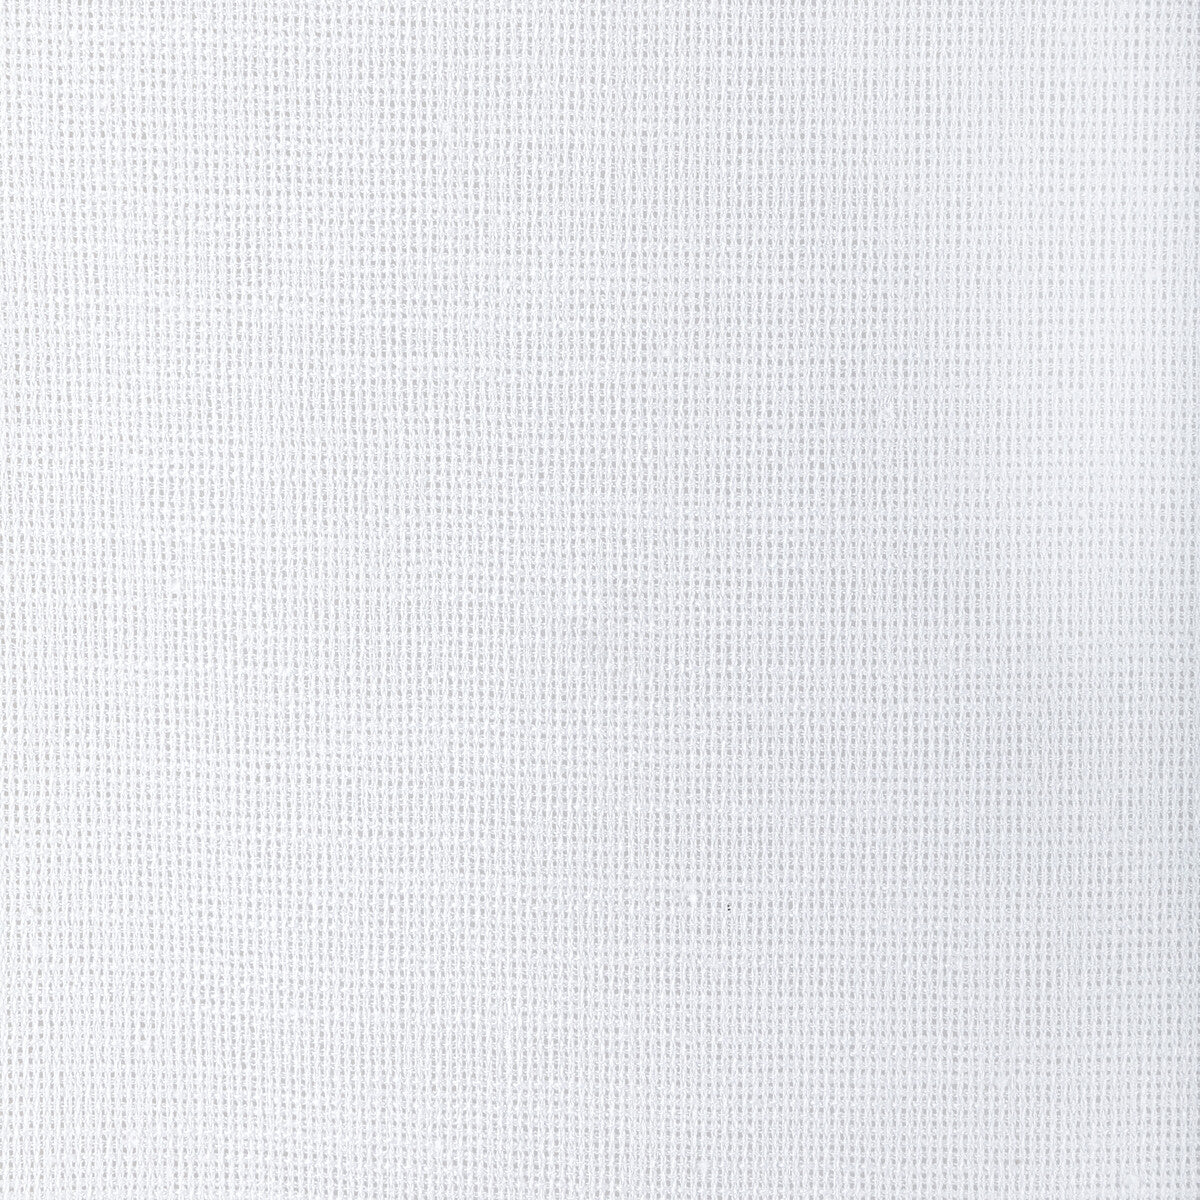 Kravet Basics fabric in 4942-101 color - pattern 4942.101.0 - by Kravet Basics